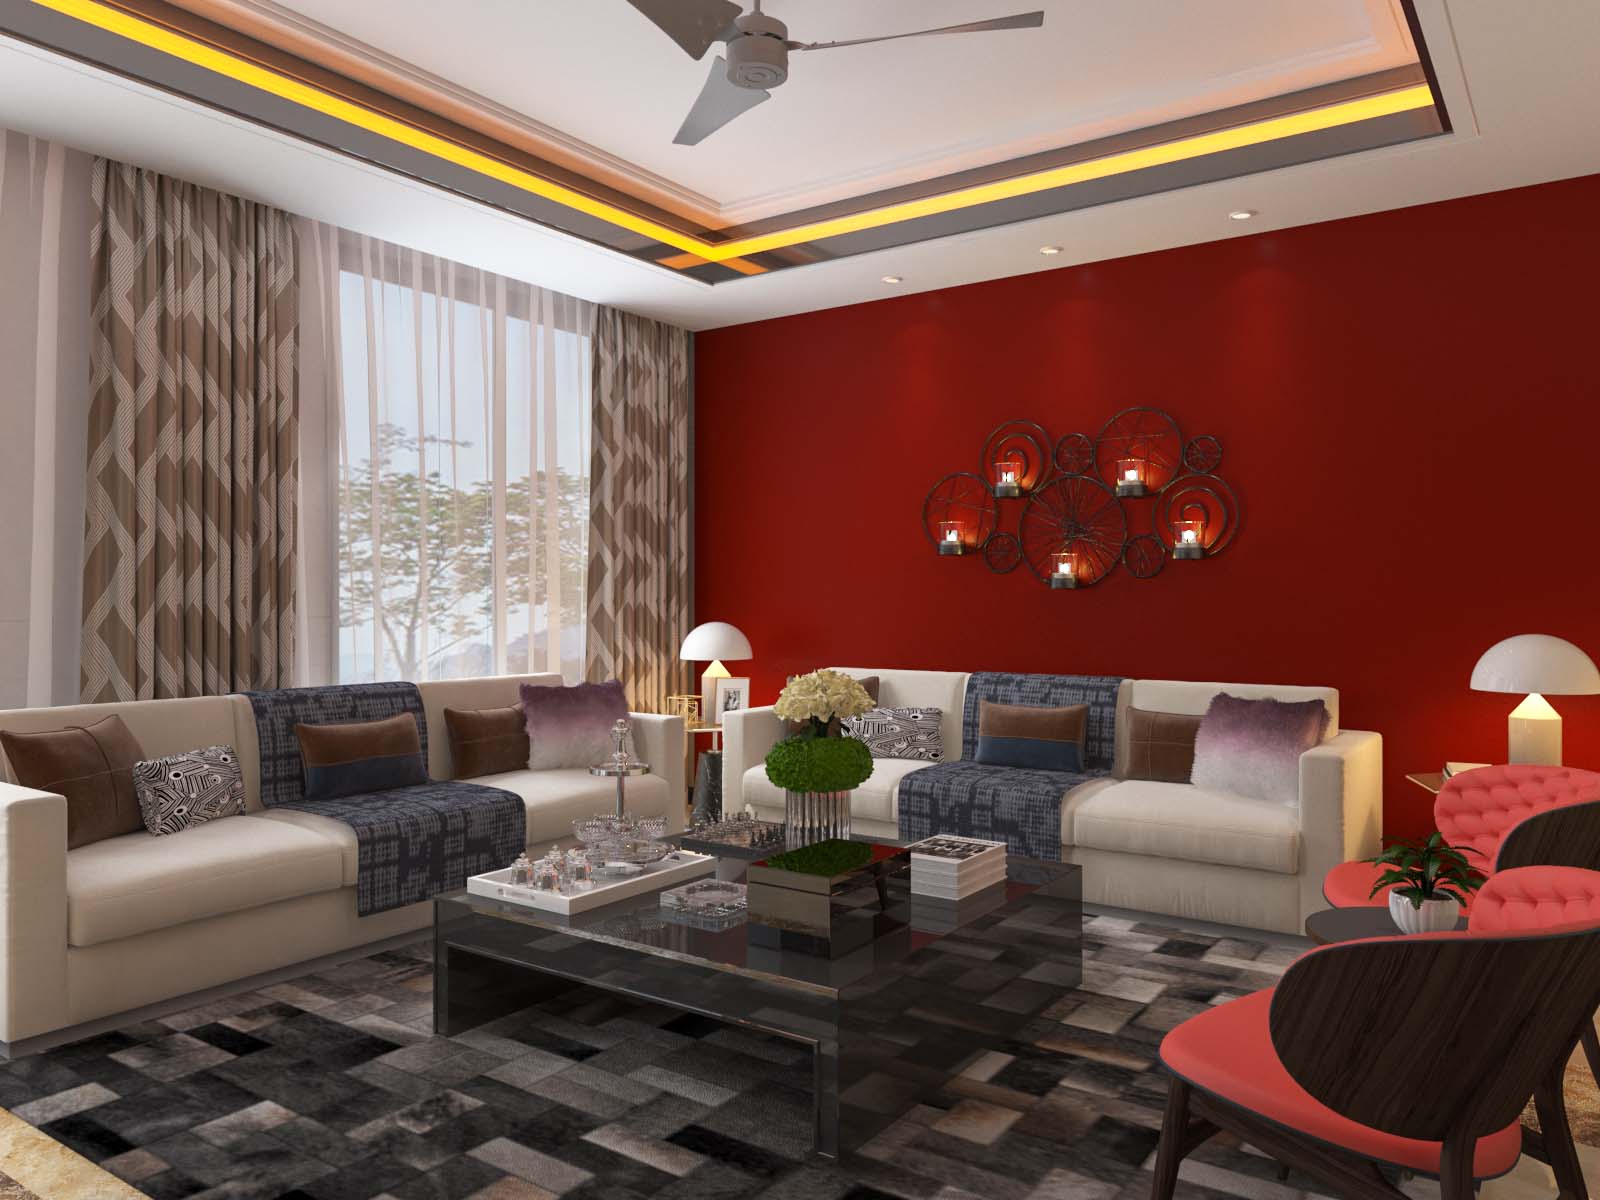 Living Room Furniture Design In Delhi Ncr